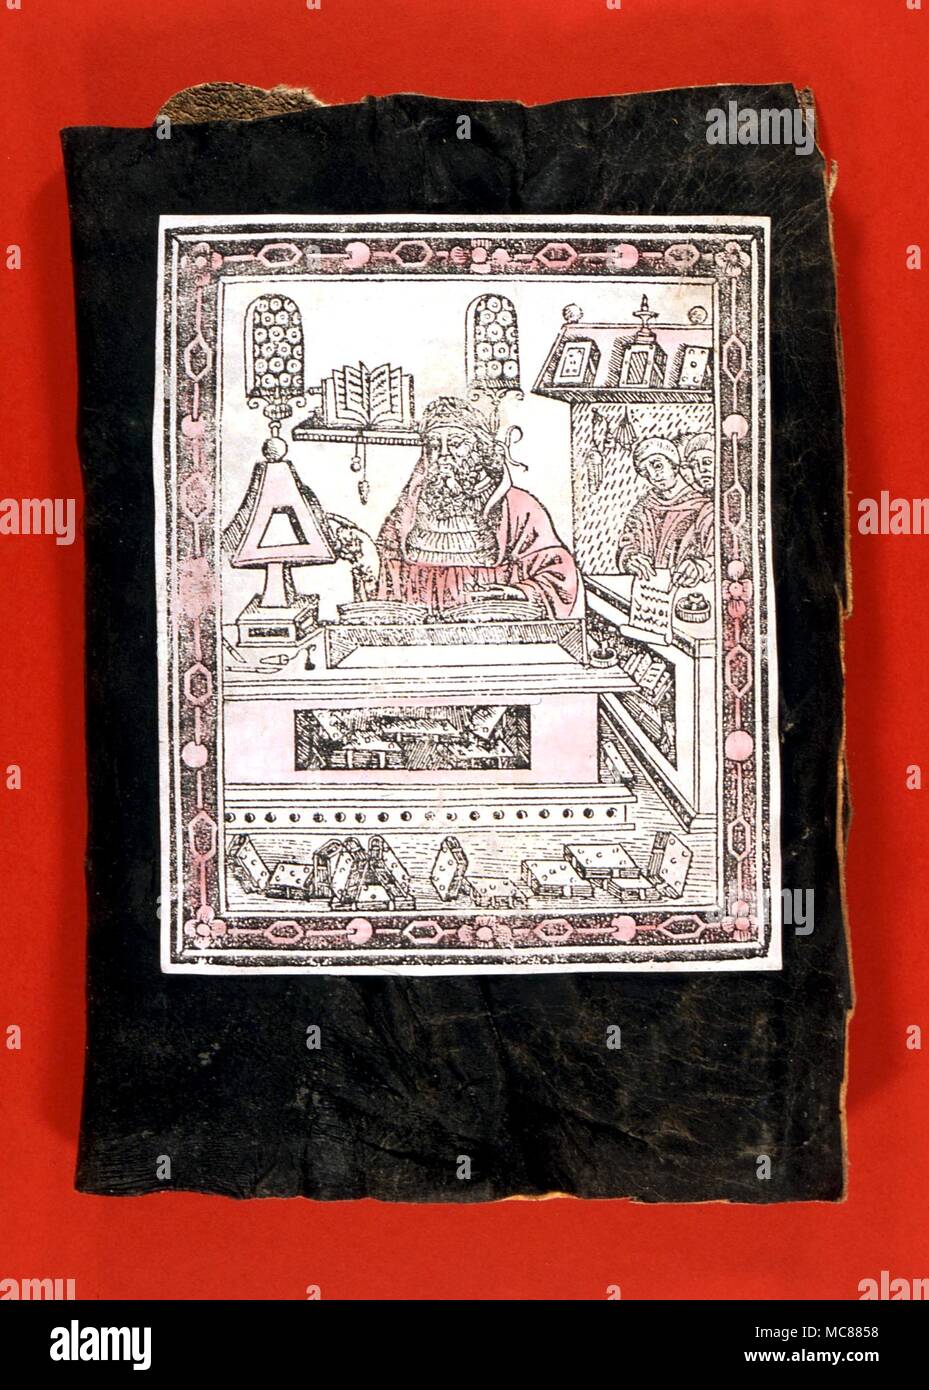 GRIMOIRE Bild aus Salomonischen grimoire Tradition eingefügt, an der Vorderseite der Moderne (1940s) grimoire. Das Bild ist aus der 1502 Ausgabe der pseud-Albertus "Liber Secretorum" Stockfoto